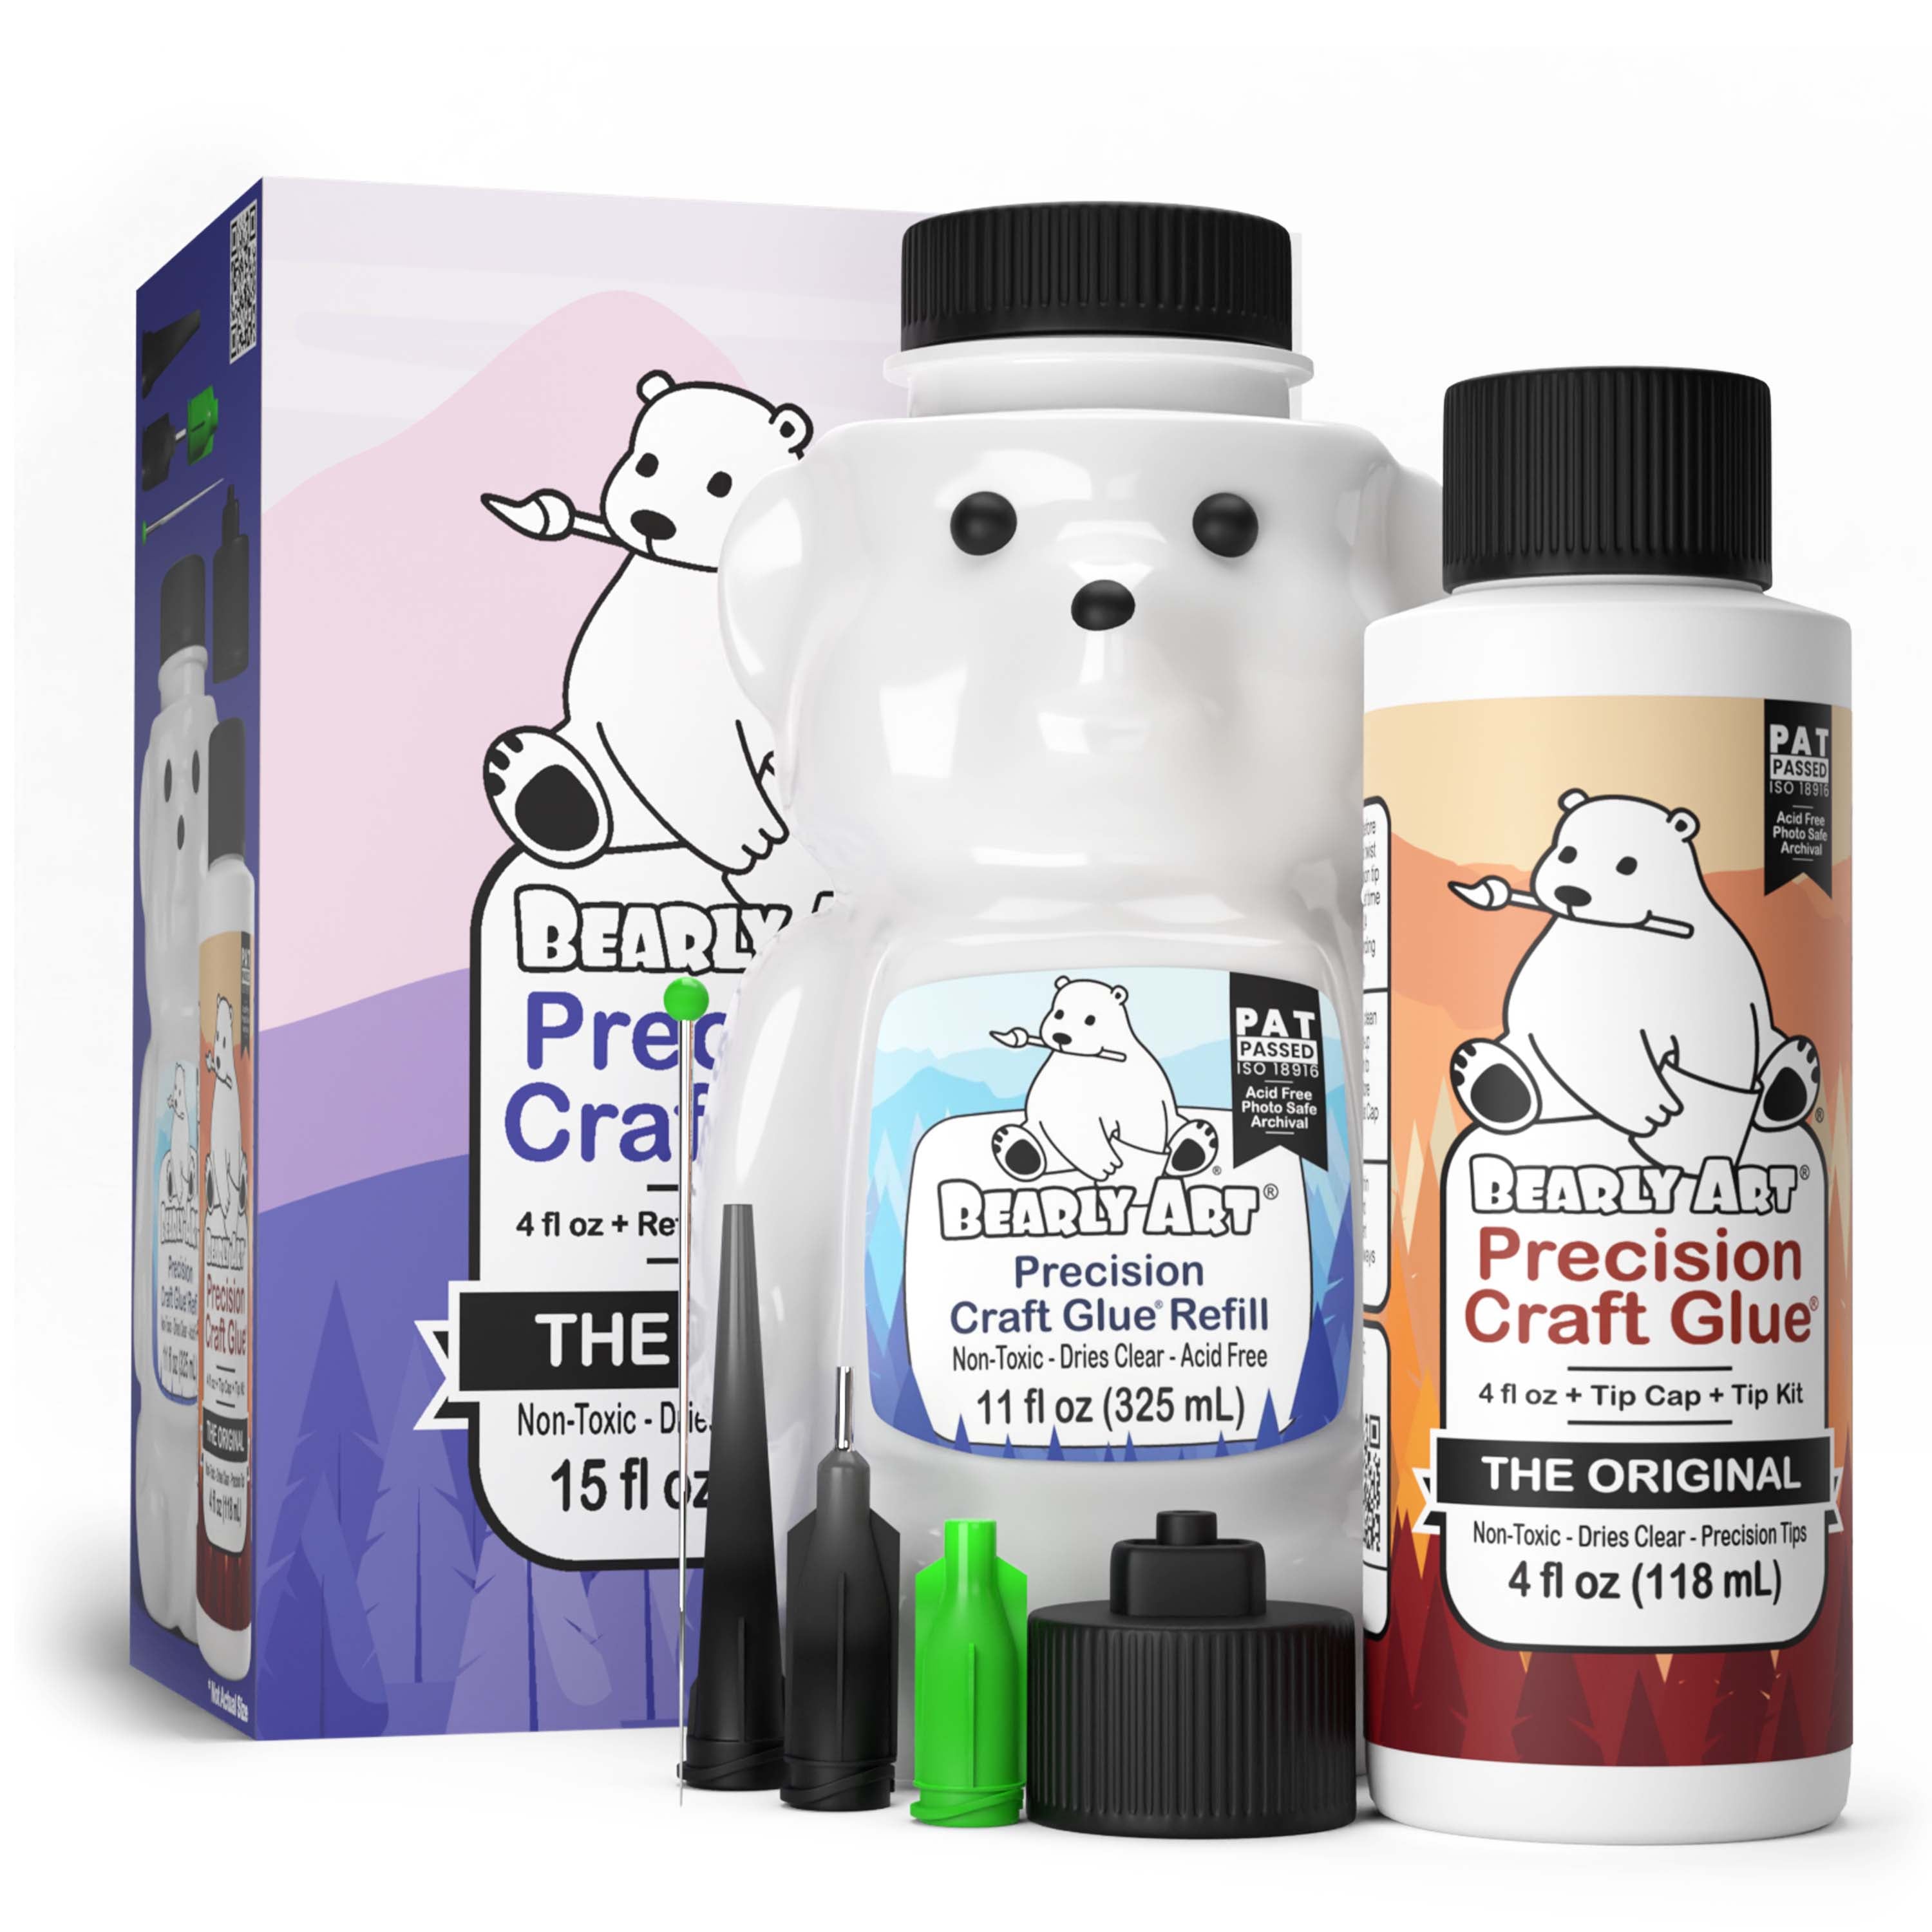 Bearly Art Precision Craft Glue - The Original With Special